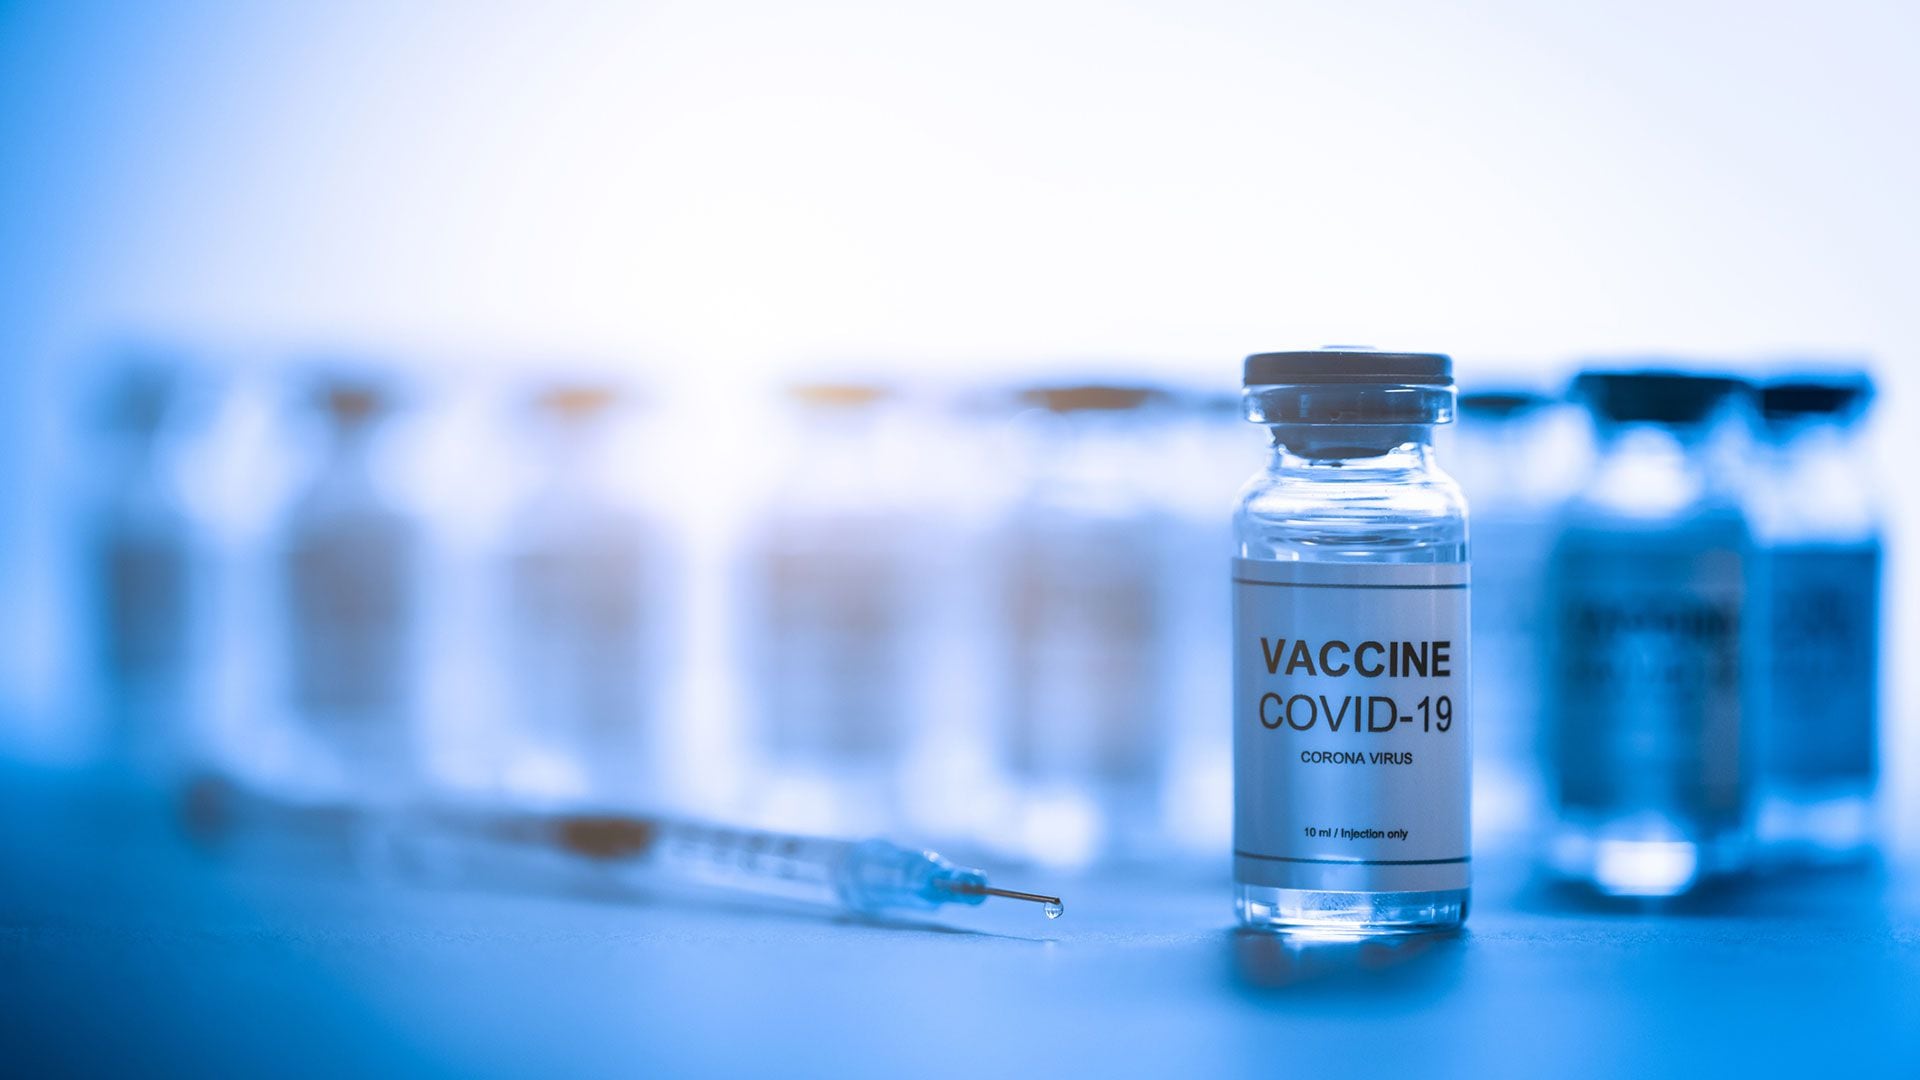 Con el COVID-19 en aumento, la vacunación se presenta como la principal defensa contra el virus
Gettyimages